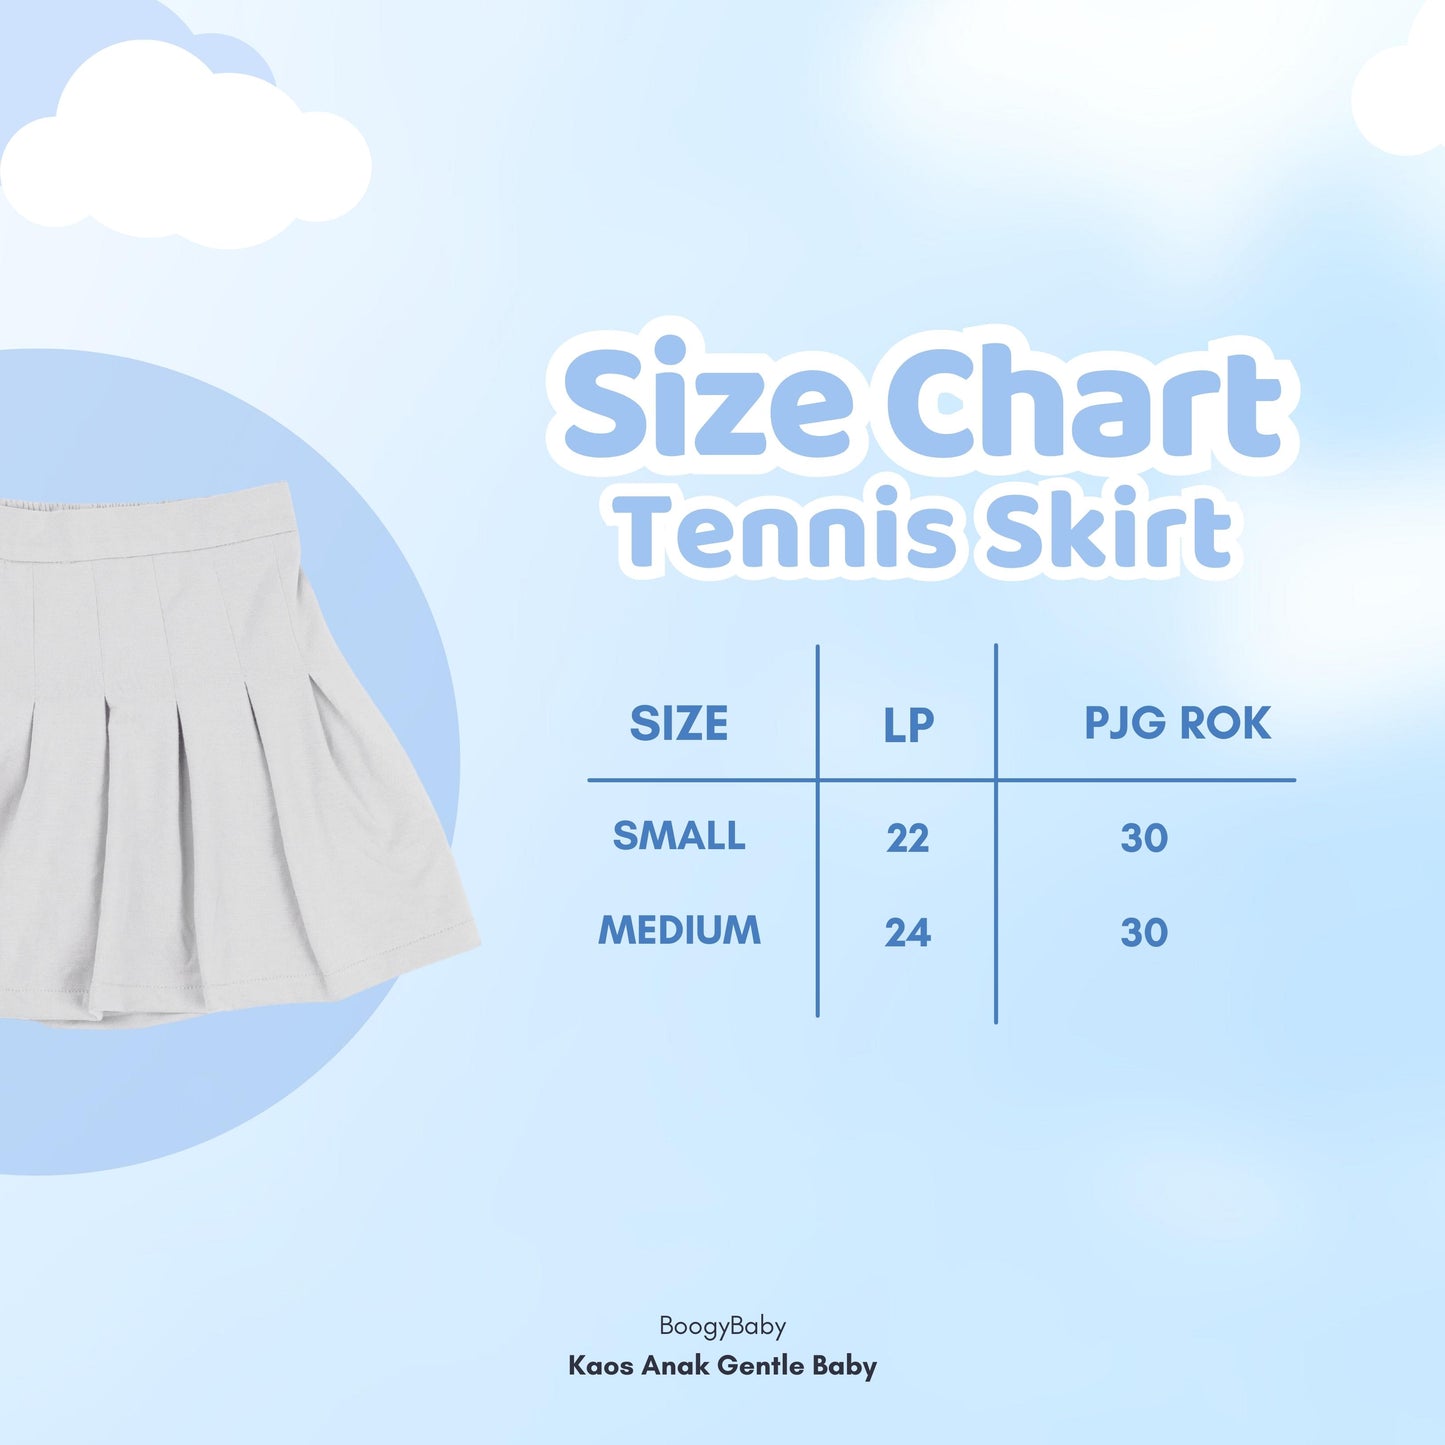 Tennis Skirt Anak (Casual Chic)